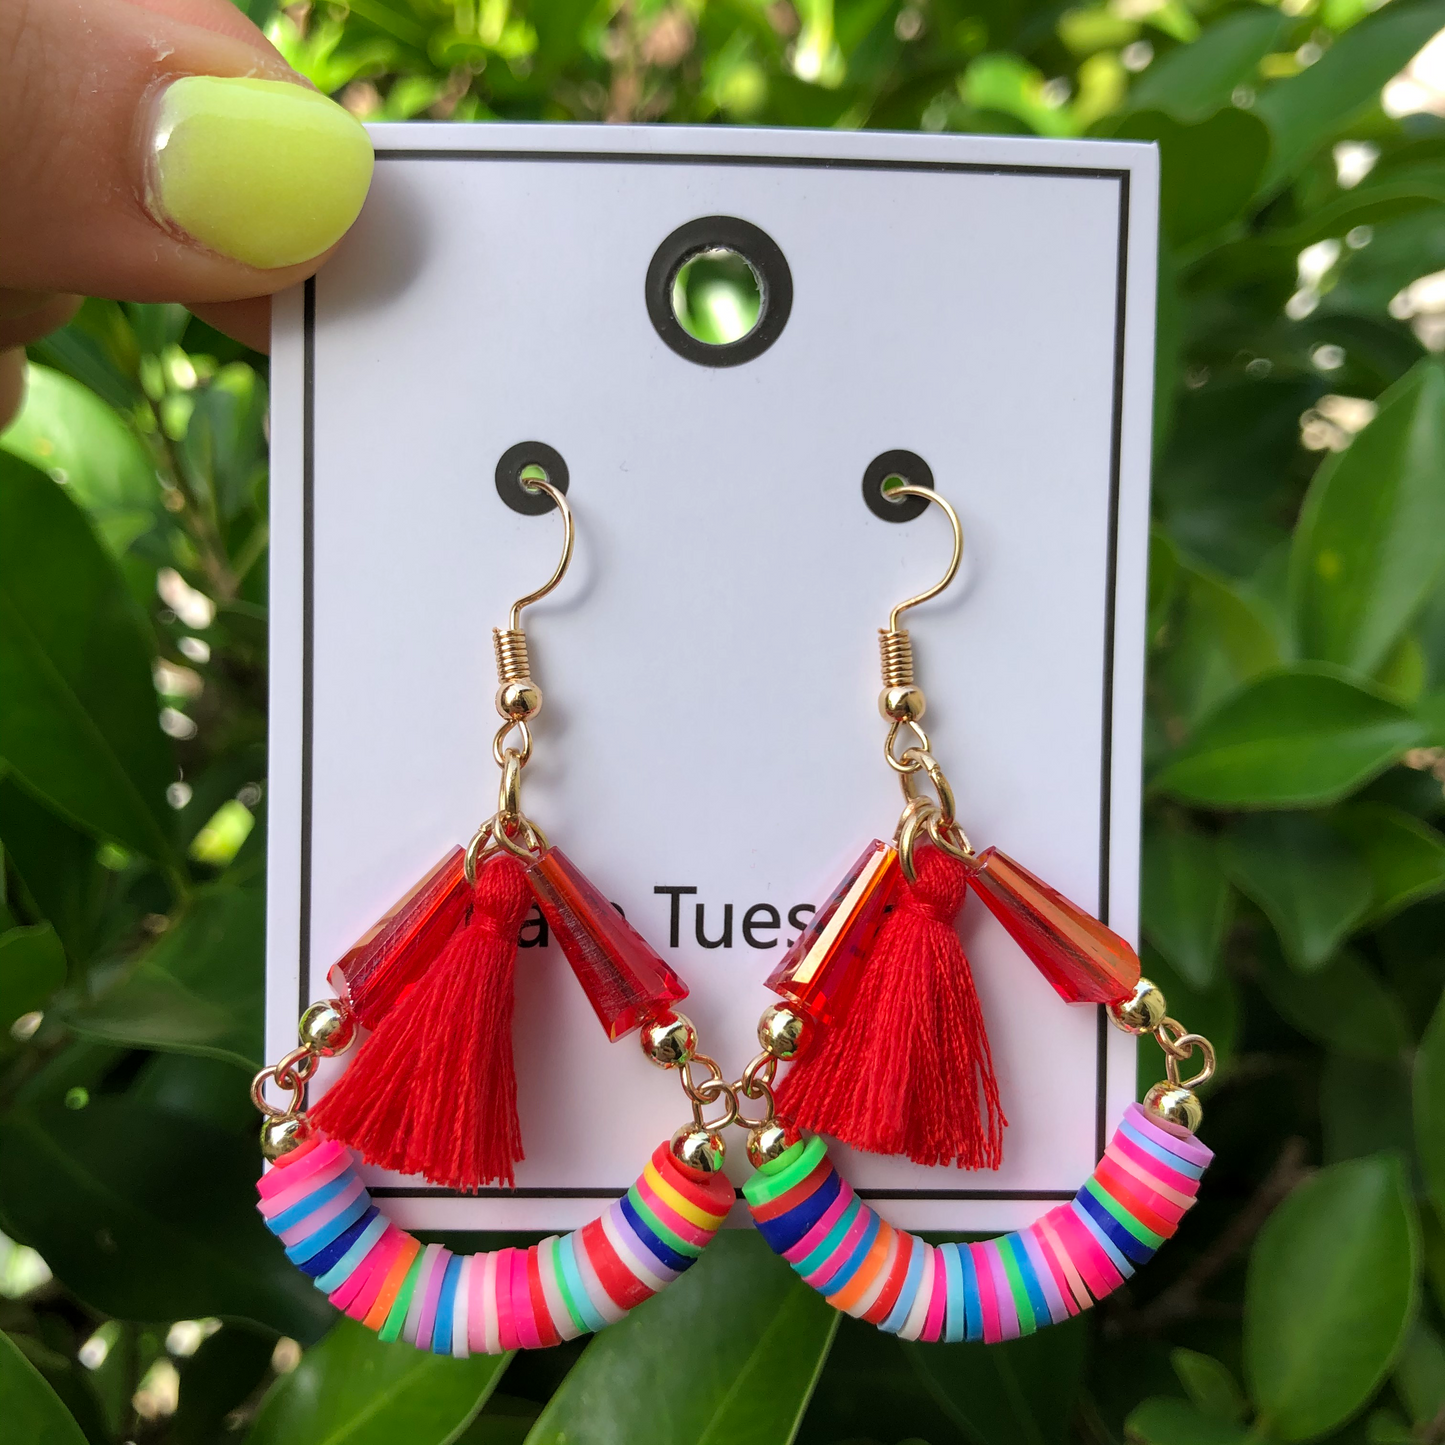 Funfetti Tassel Hang Earrings - Red